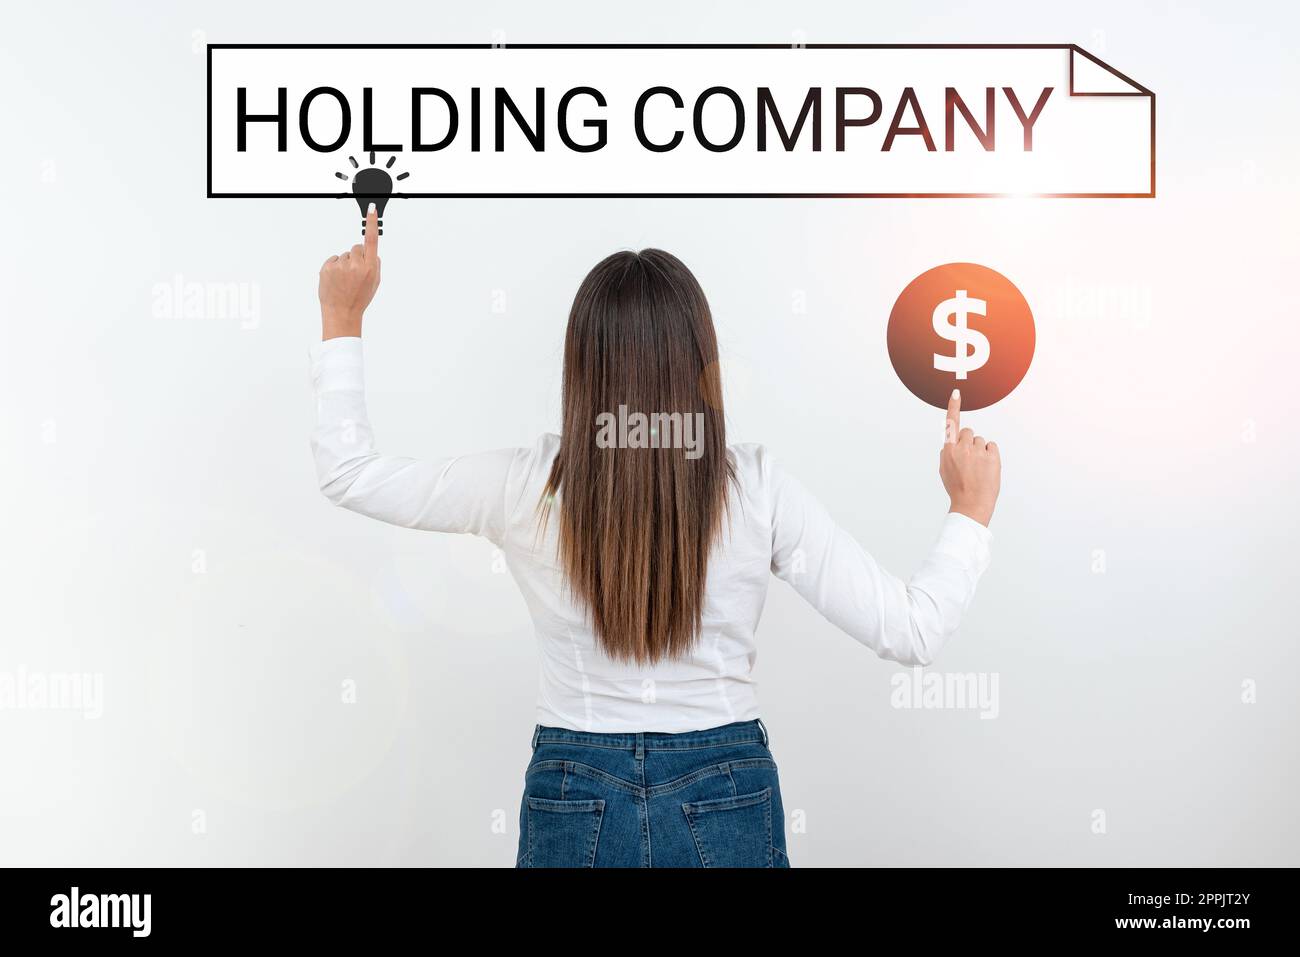 Handschriftbrief Holding Company. Das Geschäftskonzept hält Immobilien und andere finanzielle Vermögenswerte in Besitz von jemandem Stockfoto